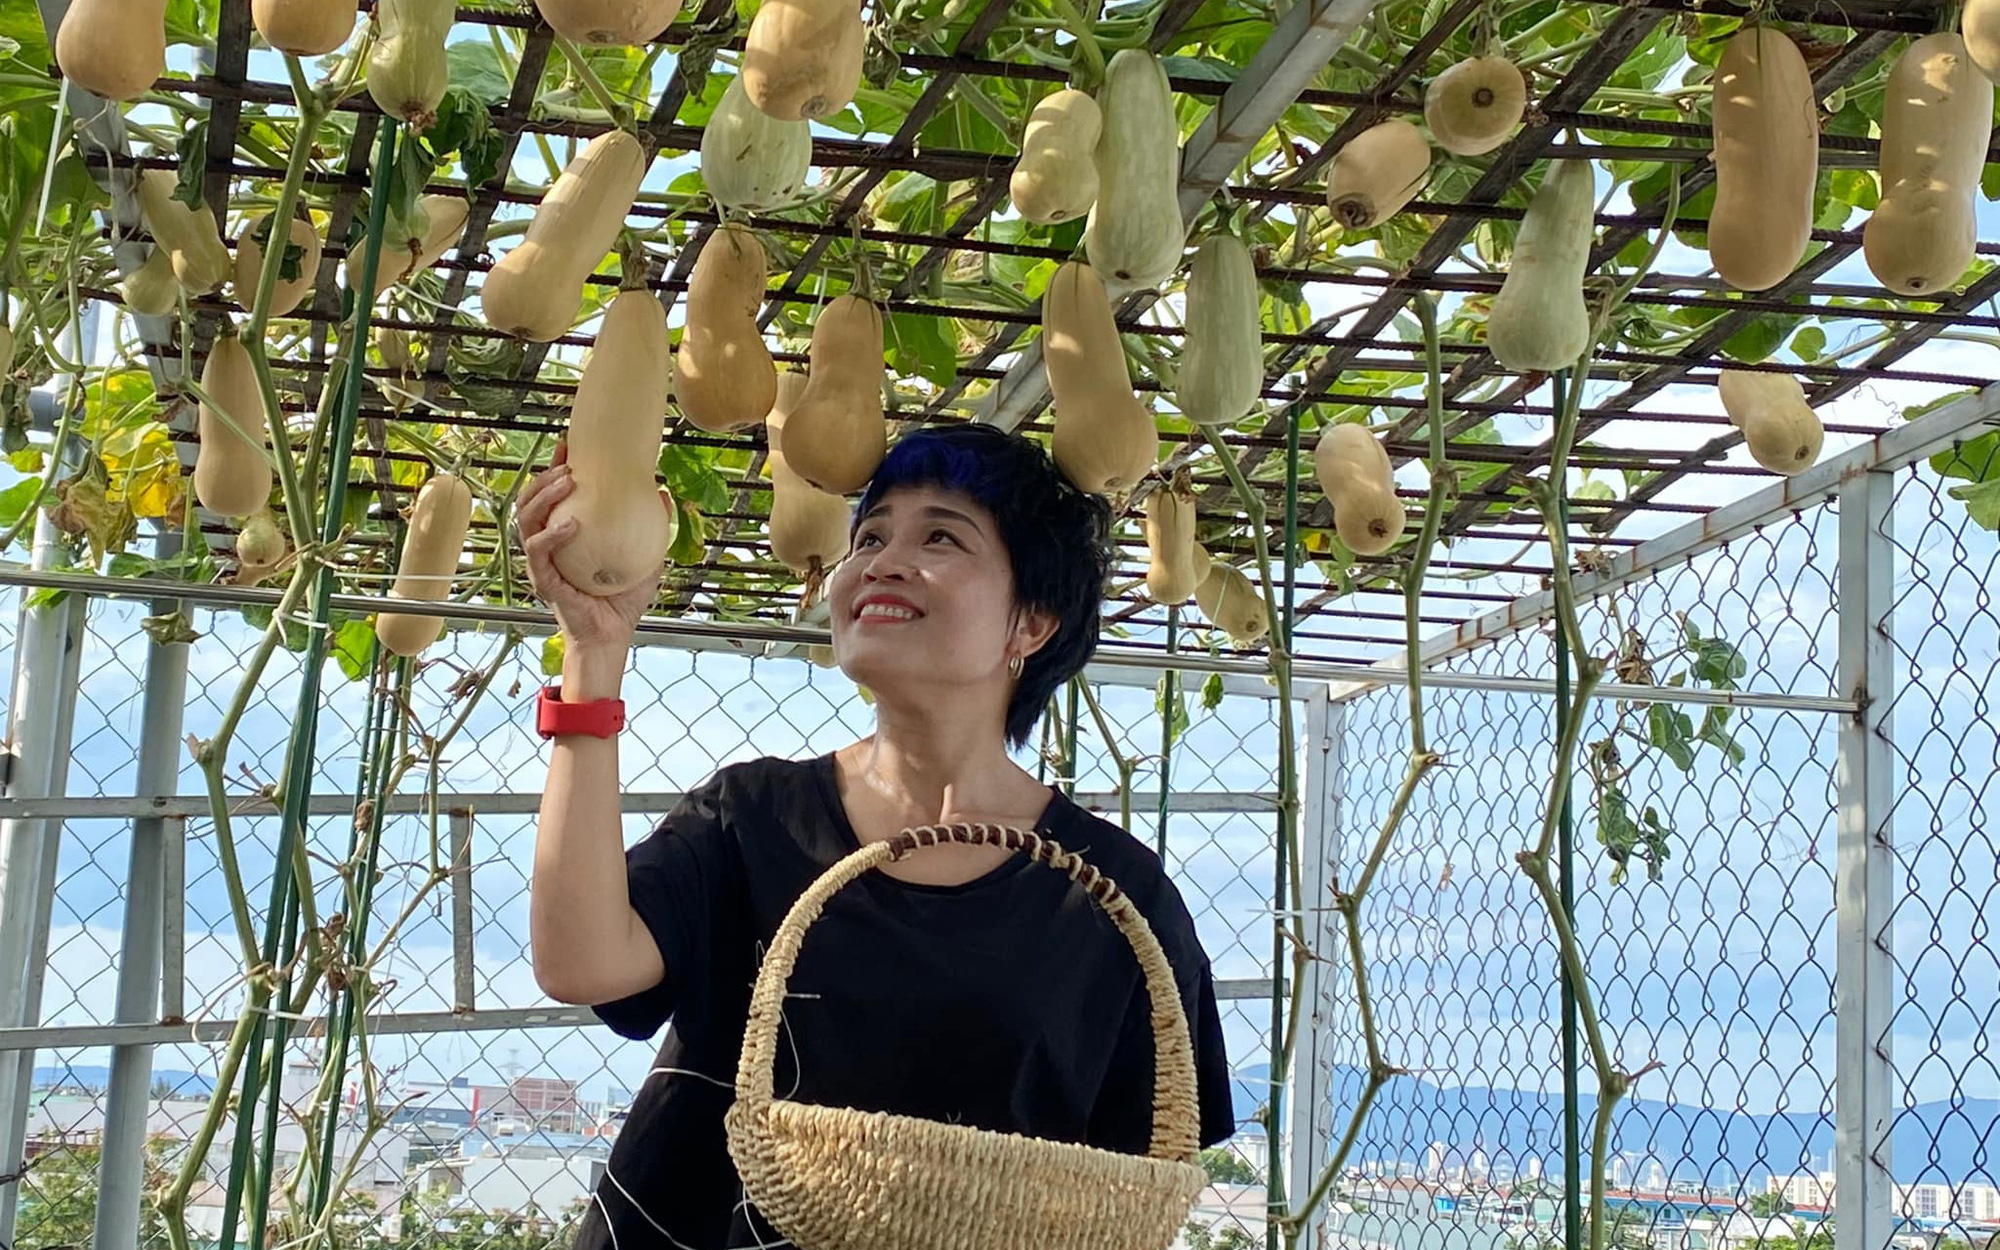 Giãn cách vẫn đủ rau quả thưởng thức nhờ vườn cây xanh um trên sân thượng ở Đà Nẵng